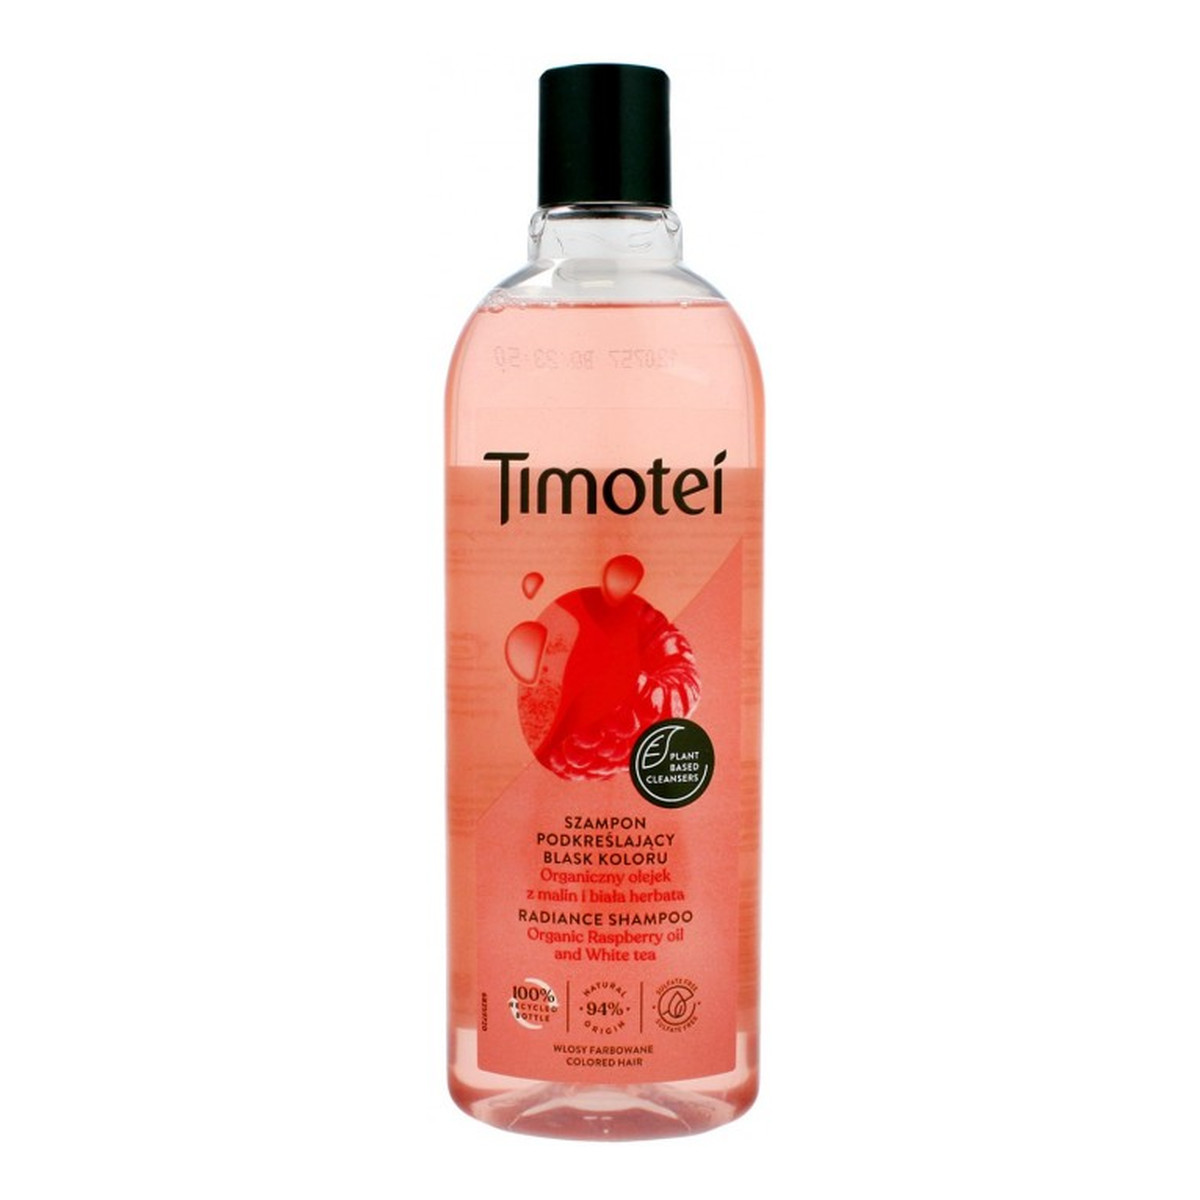 timotei szampon do włosów farbowanych olsniewajacy kolor